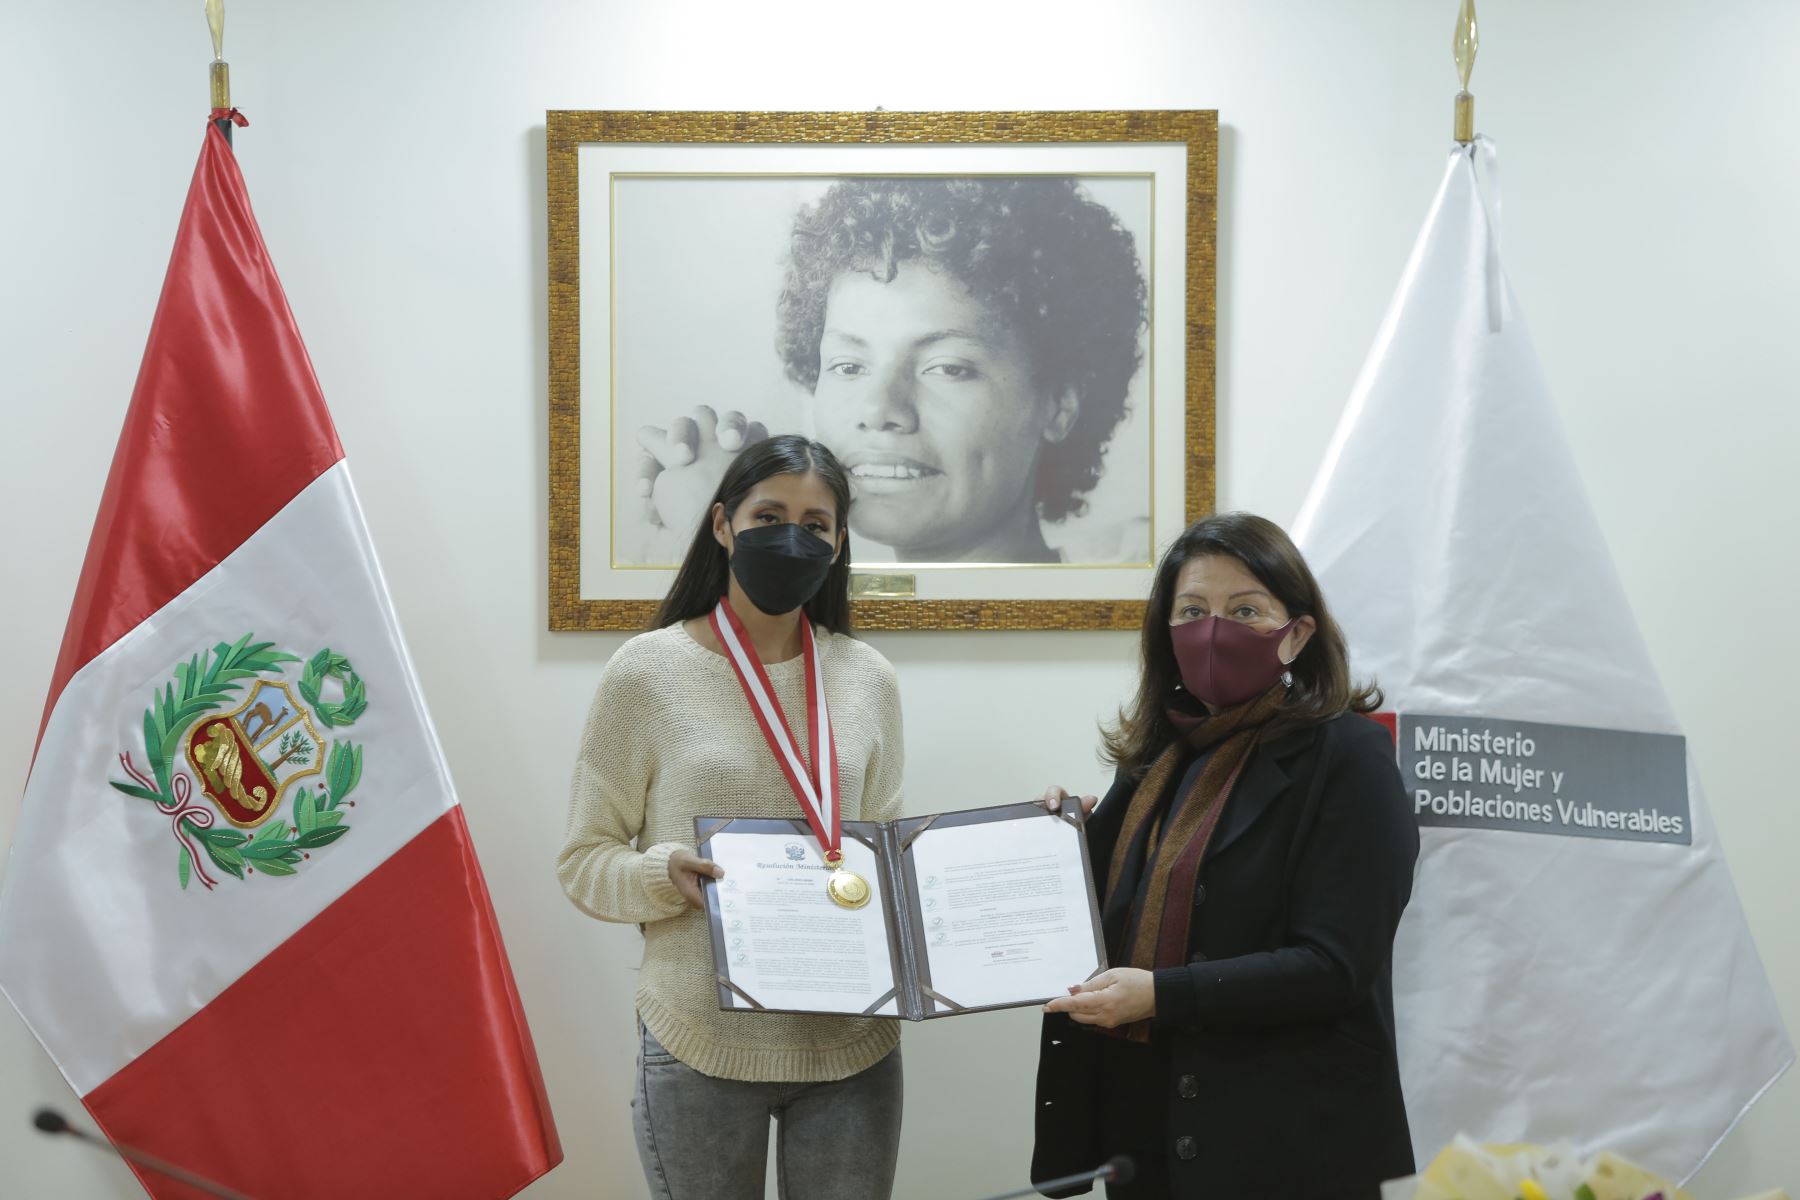 Kimberly García recibe condecoración “Orden al Mérito de la Mujer” por su destacado desempeño deportivo.